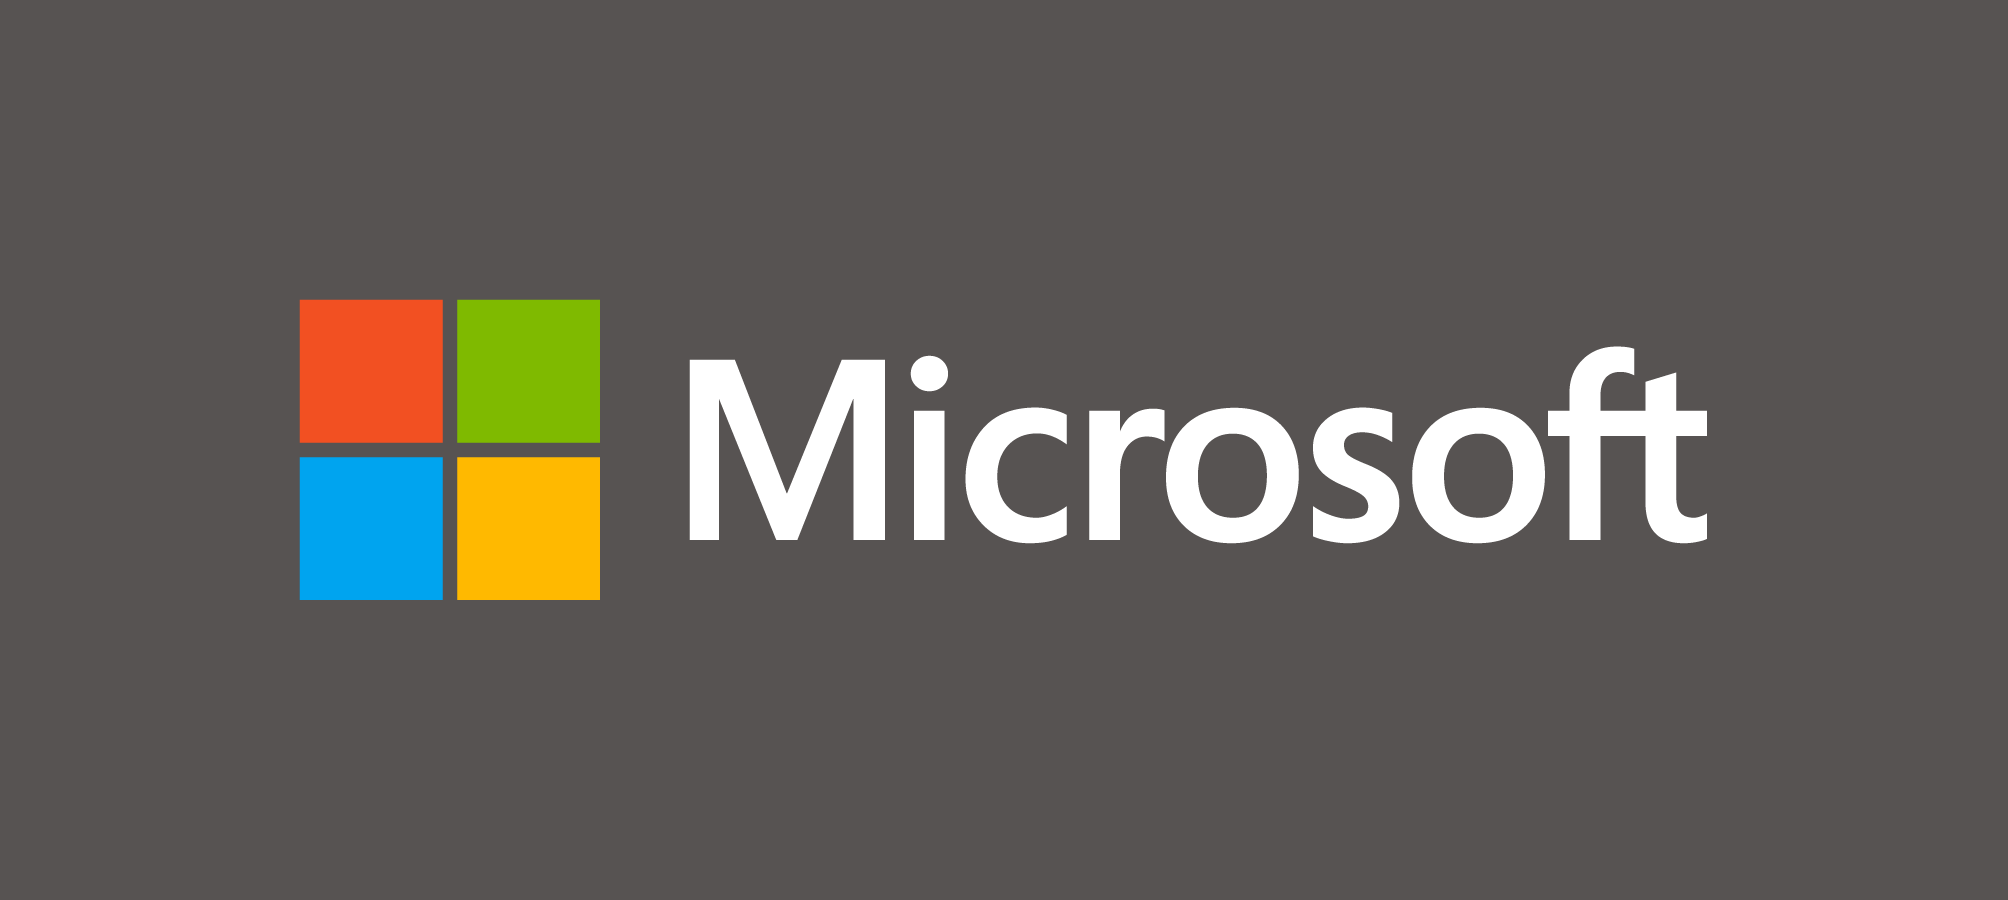 Spoločnosť Microsoft oznamuje stiahnutie aktualizácií pre SHA-1 do apríla 2019, varovania Používatelia systému Windows 7 povolia podporu SHA-2